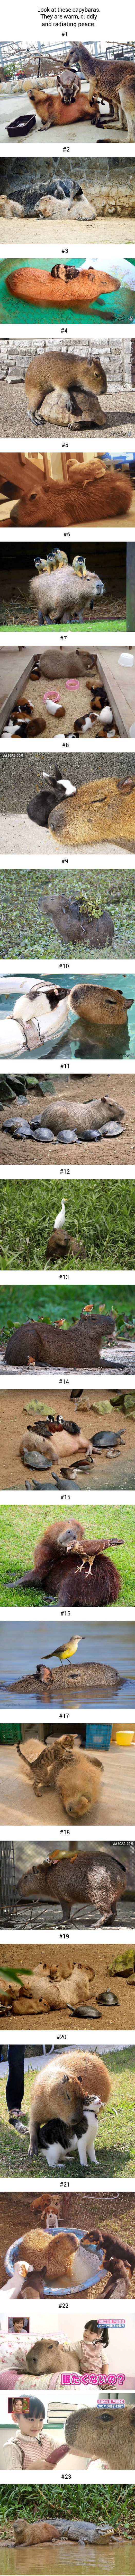 23-capybara-photos